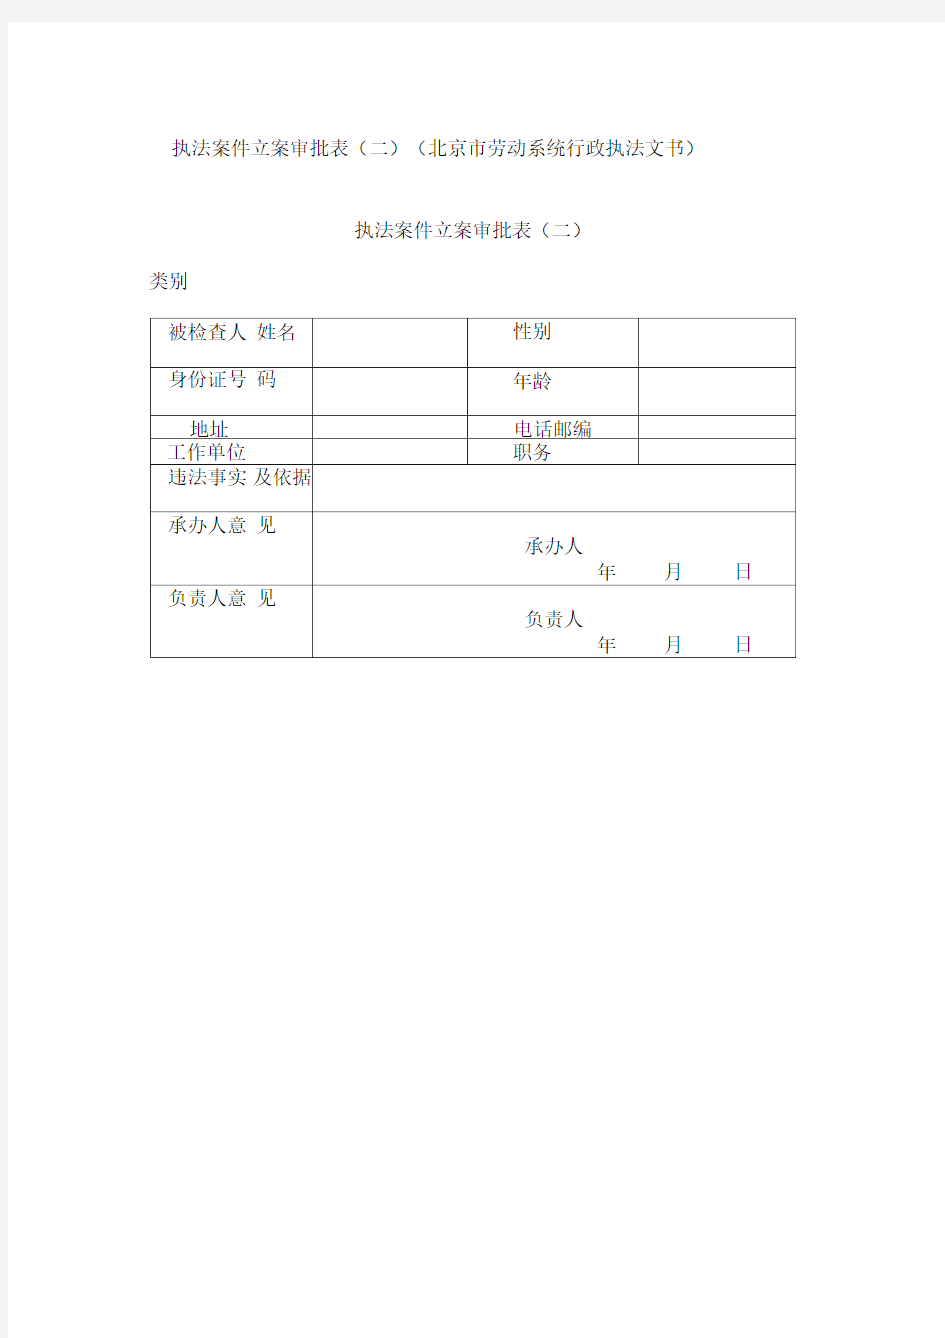 执法案件立案审批表(二)(北京市劳动系统行政执法文书)